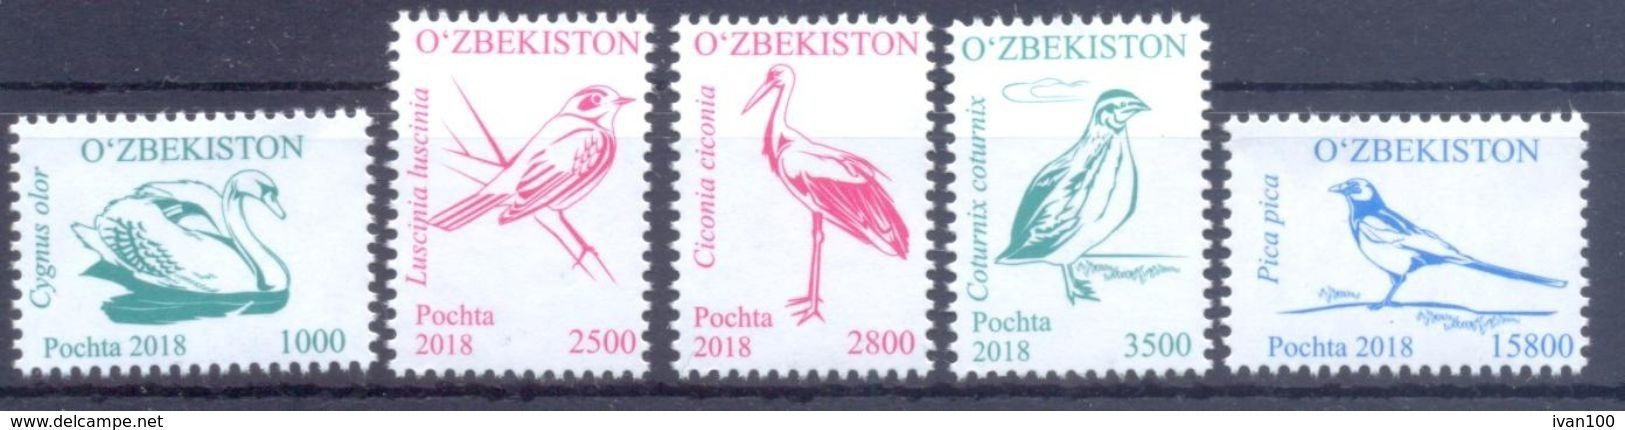 2018. Uzbekistan, Definitives, Birds, Issue III, 5v, Mint/** - Uzbekistan